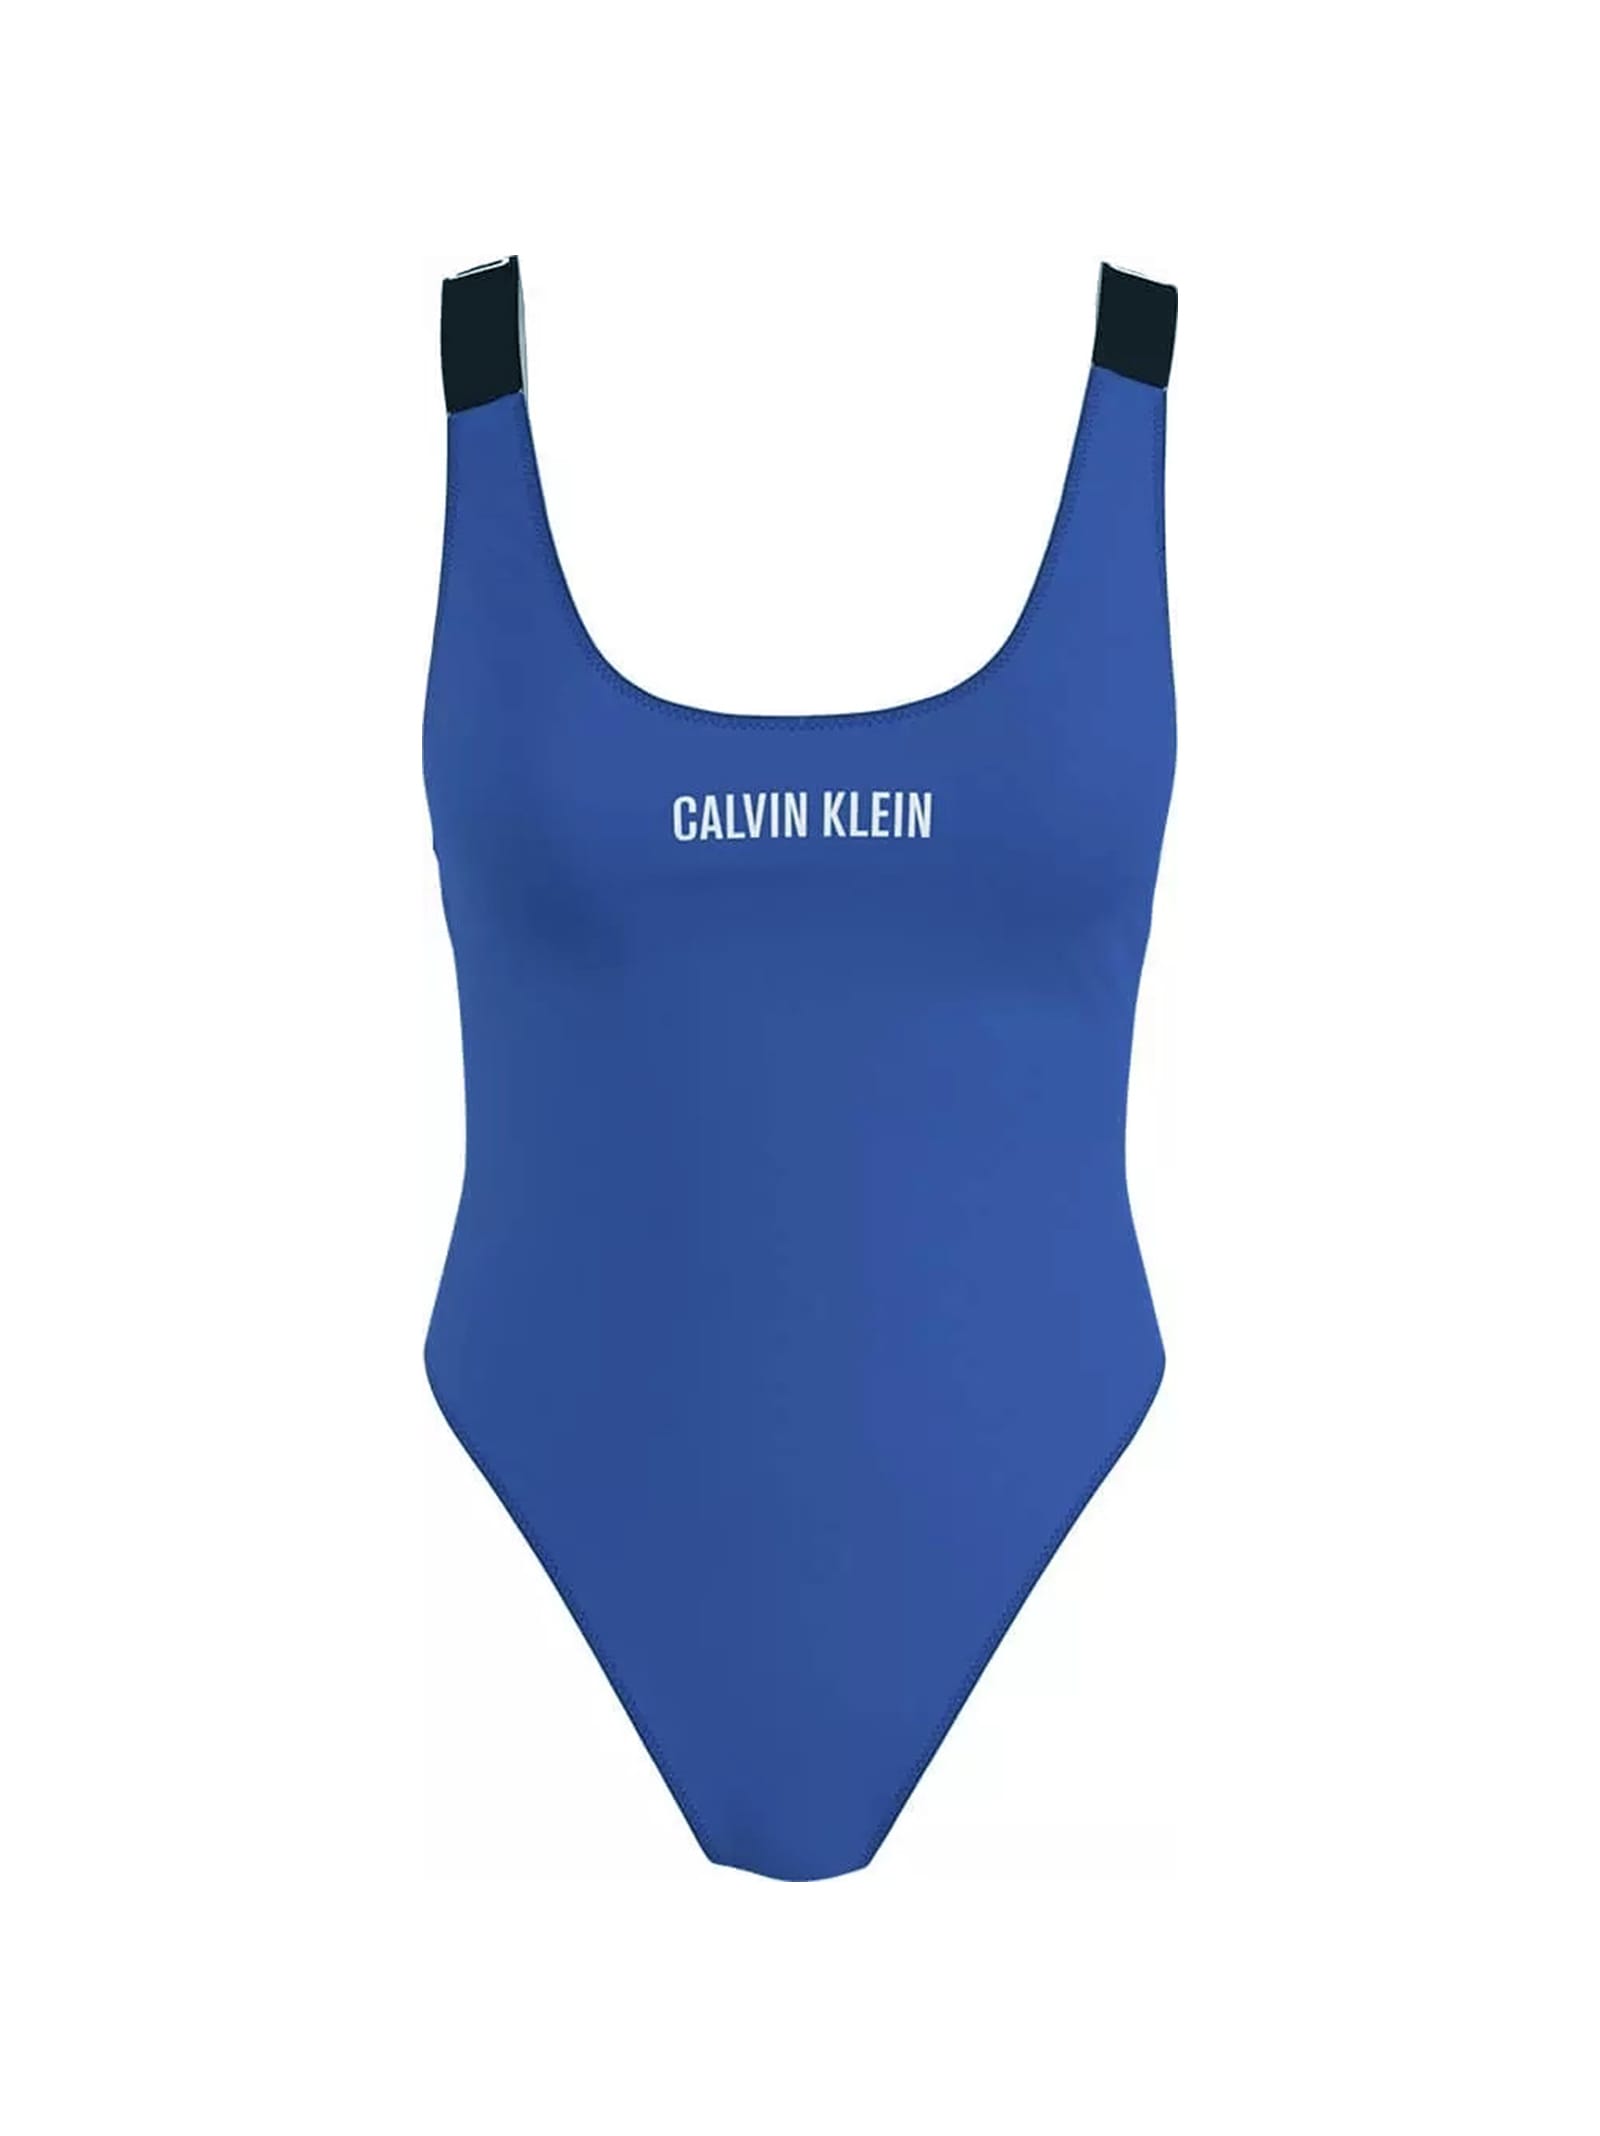 Calvin Klein One Piece Swimsuit